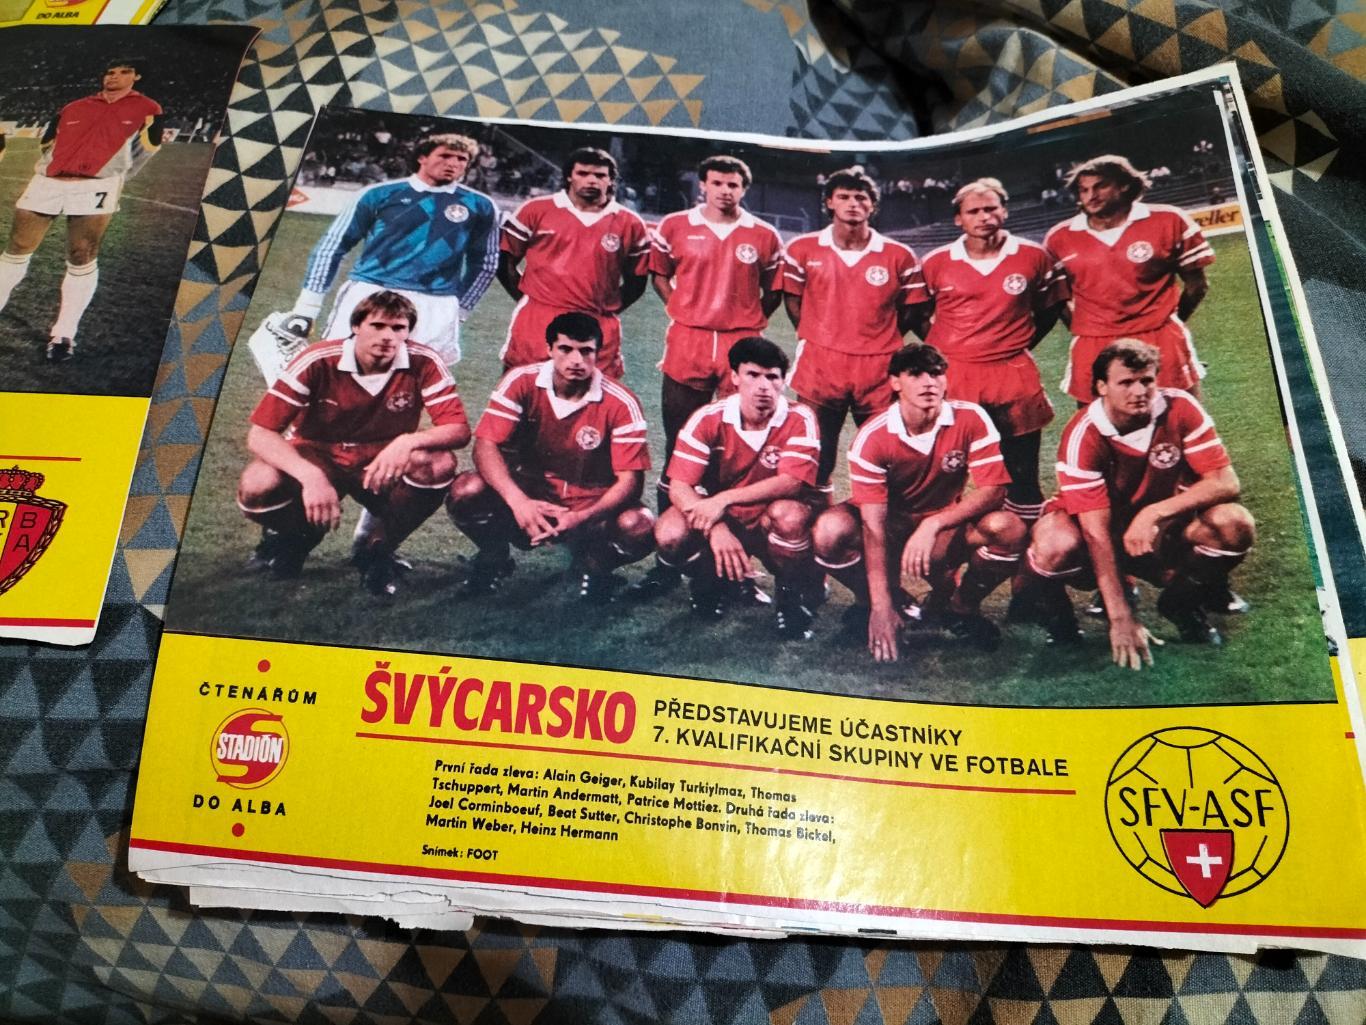 Постер из журнала Стадион.сб.Швейцария.